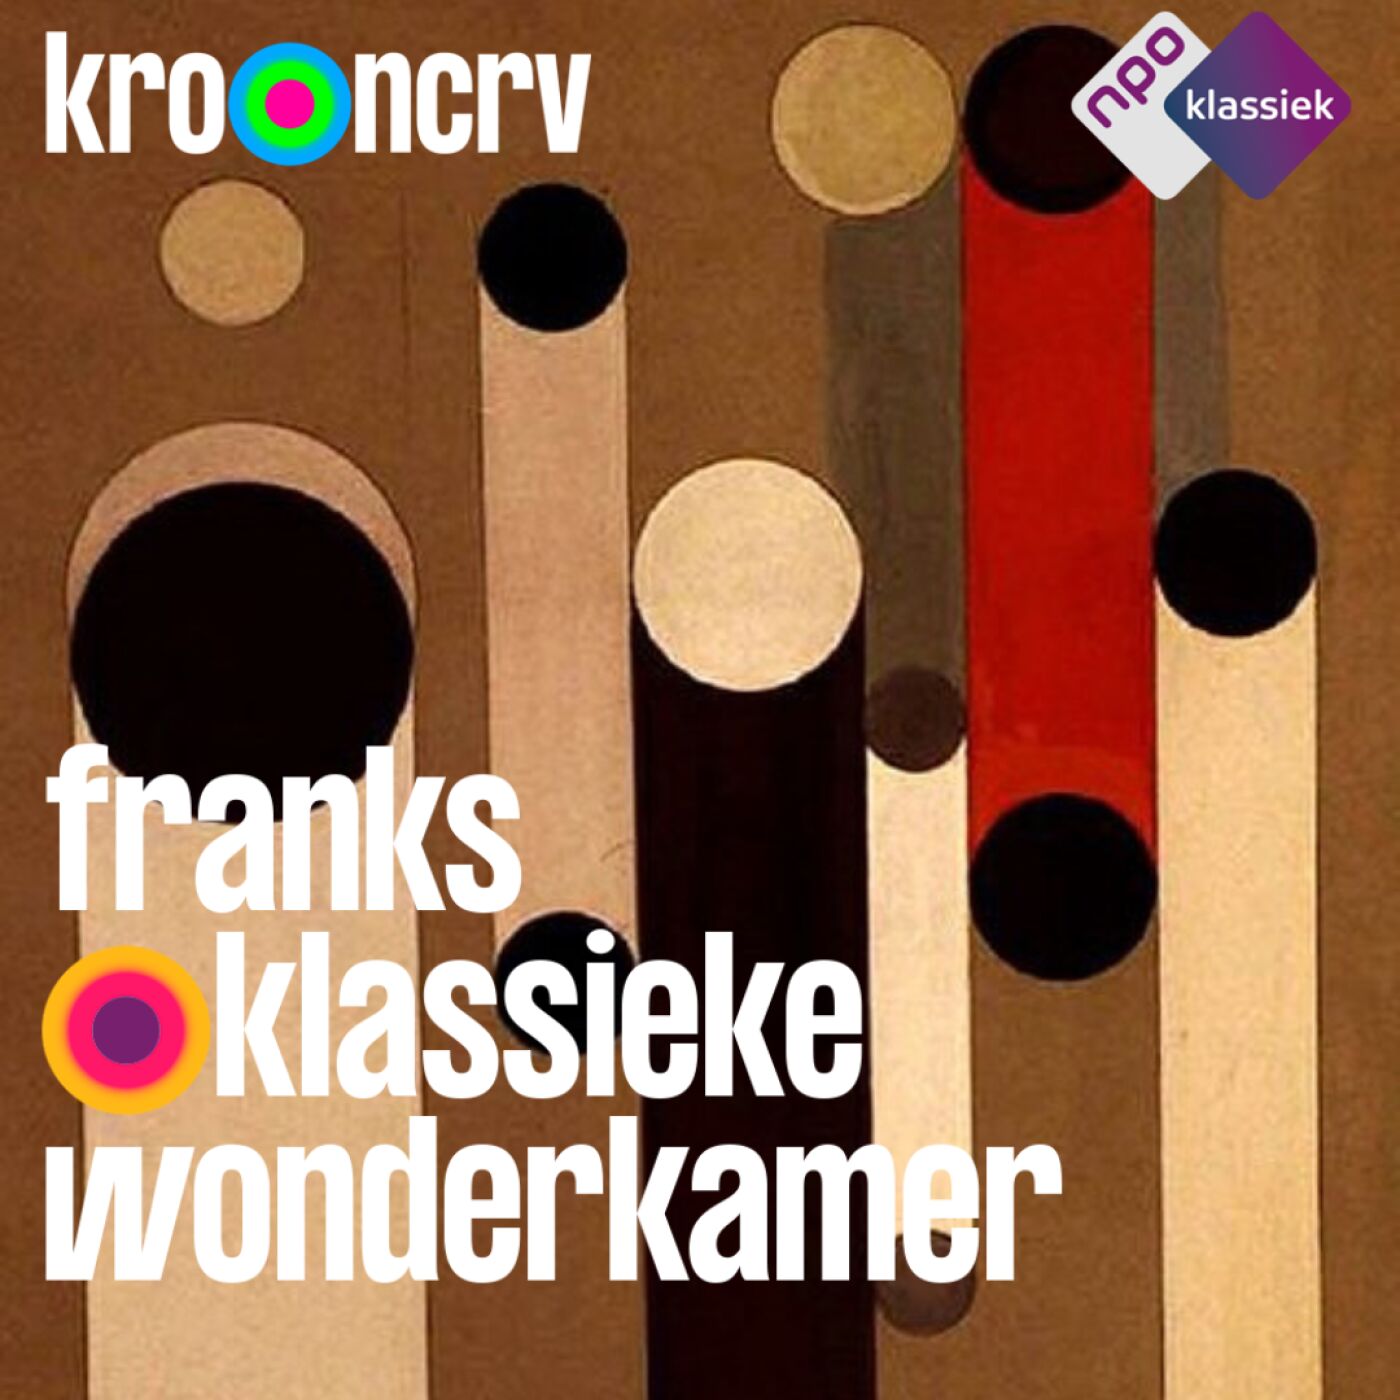 #203 - Franks Klassieke Wonderkamer - ‘Chet Baker’s Blauw’